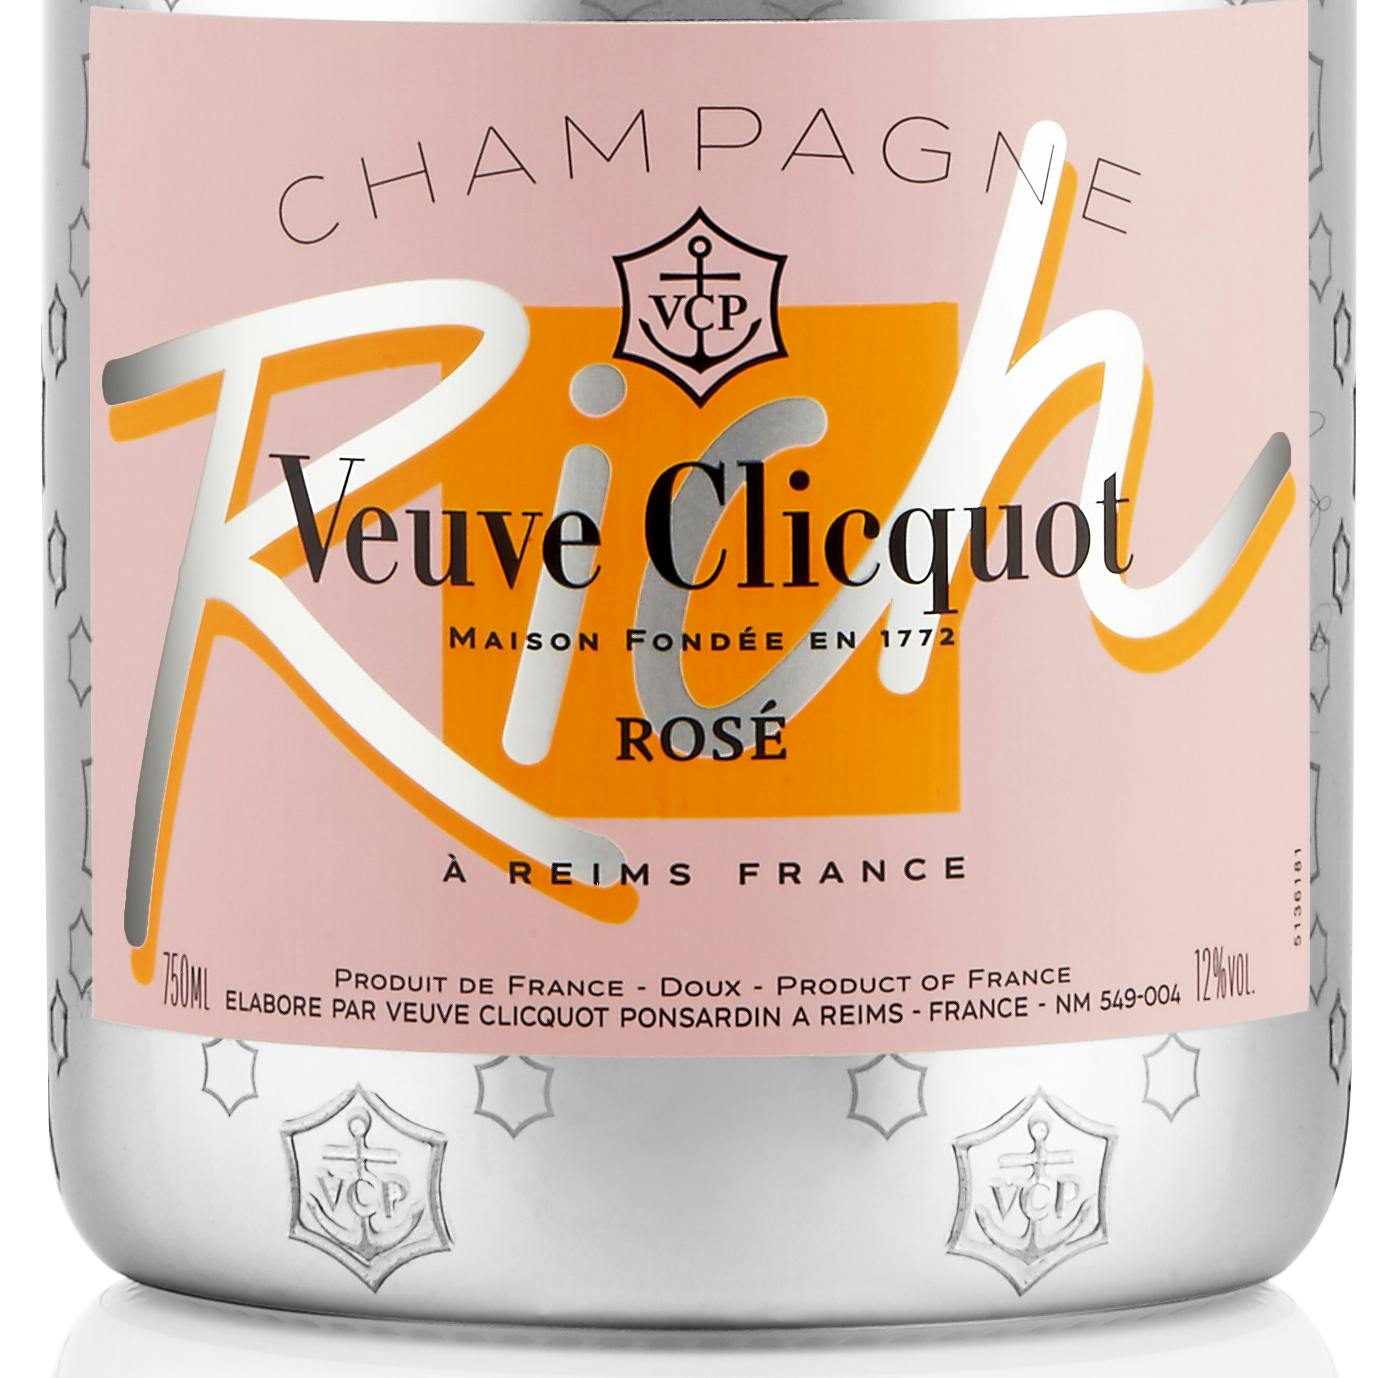 Veuve Clicquot Rich Rosé 750ml - The Wine Guy